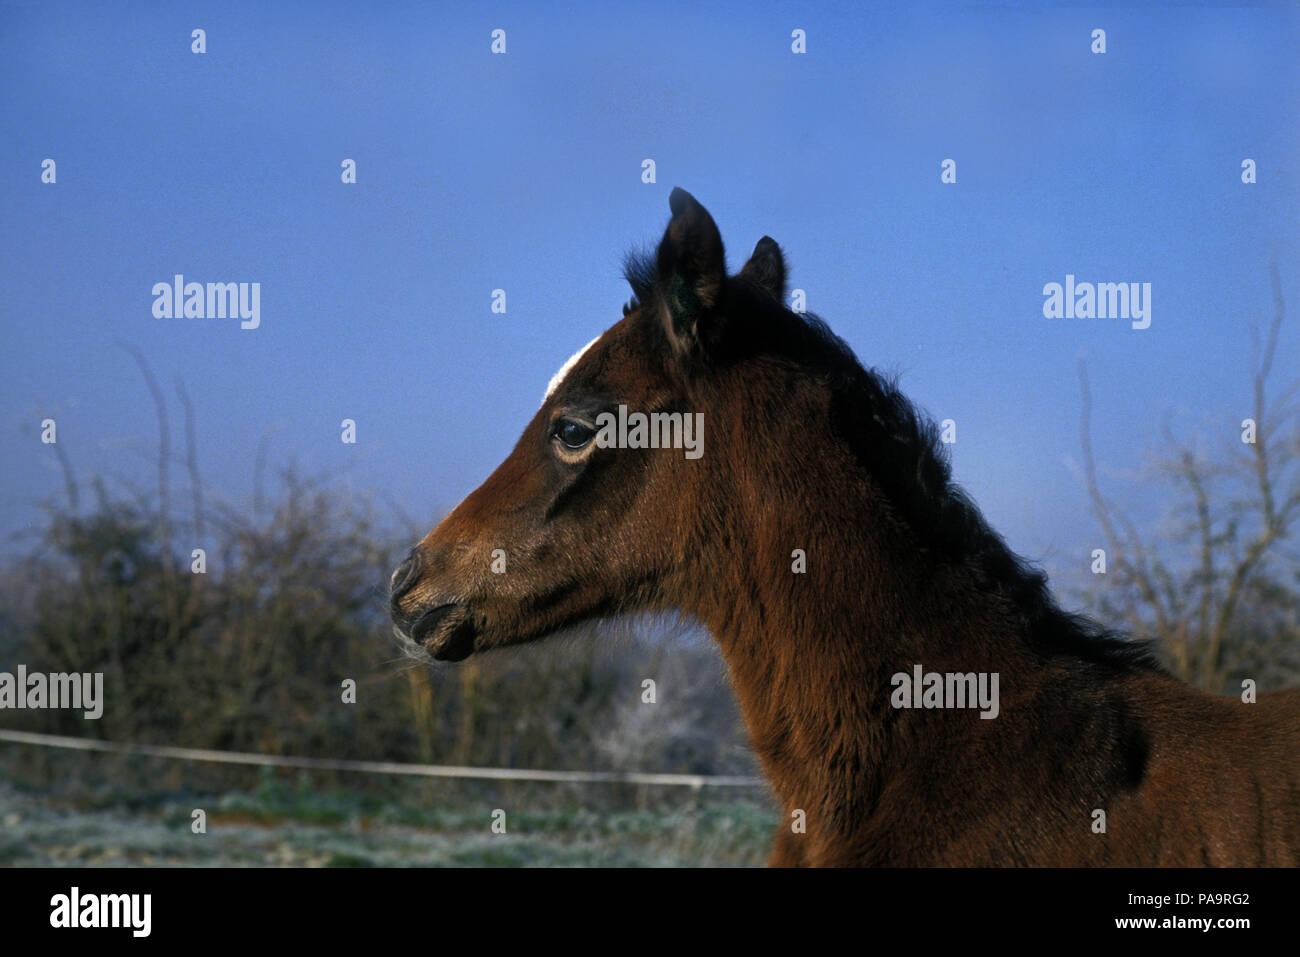 Arab - Foal - 1 day. Pur-sang arabe - Poulain d'un jour Equus caballus. Stock Photo